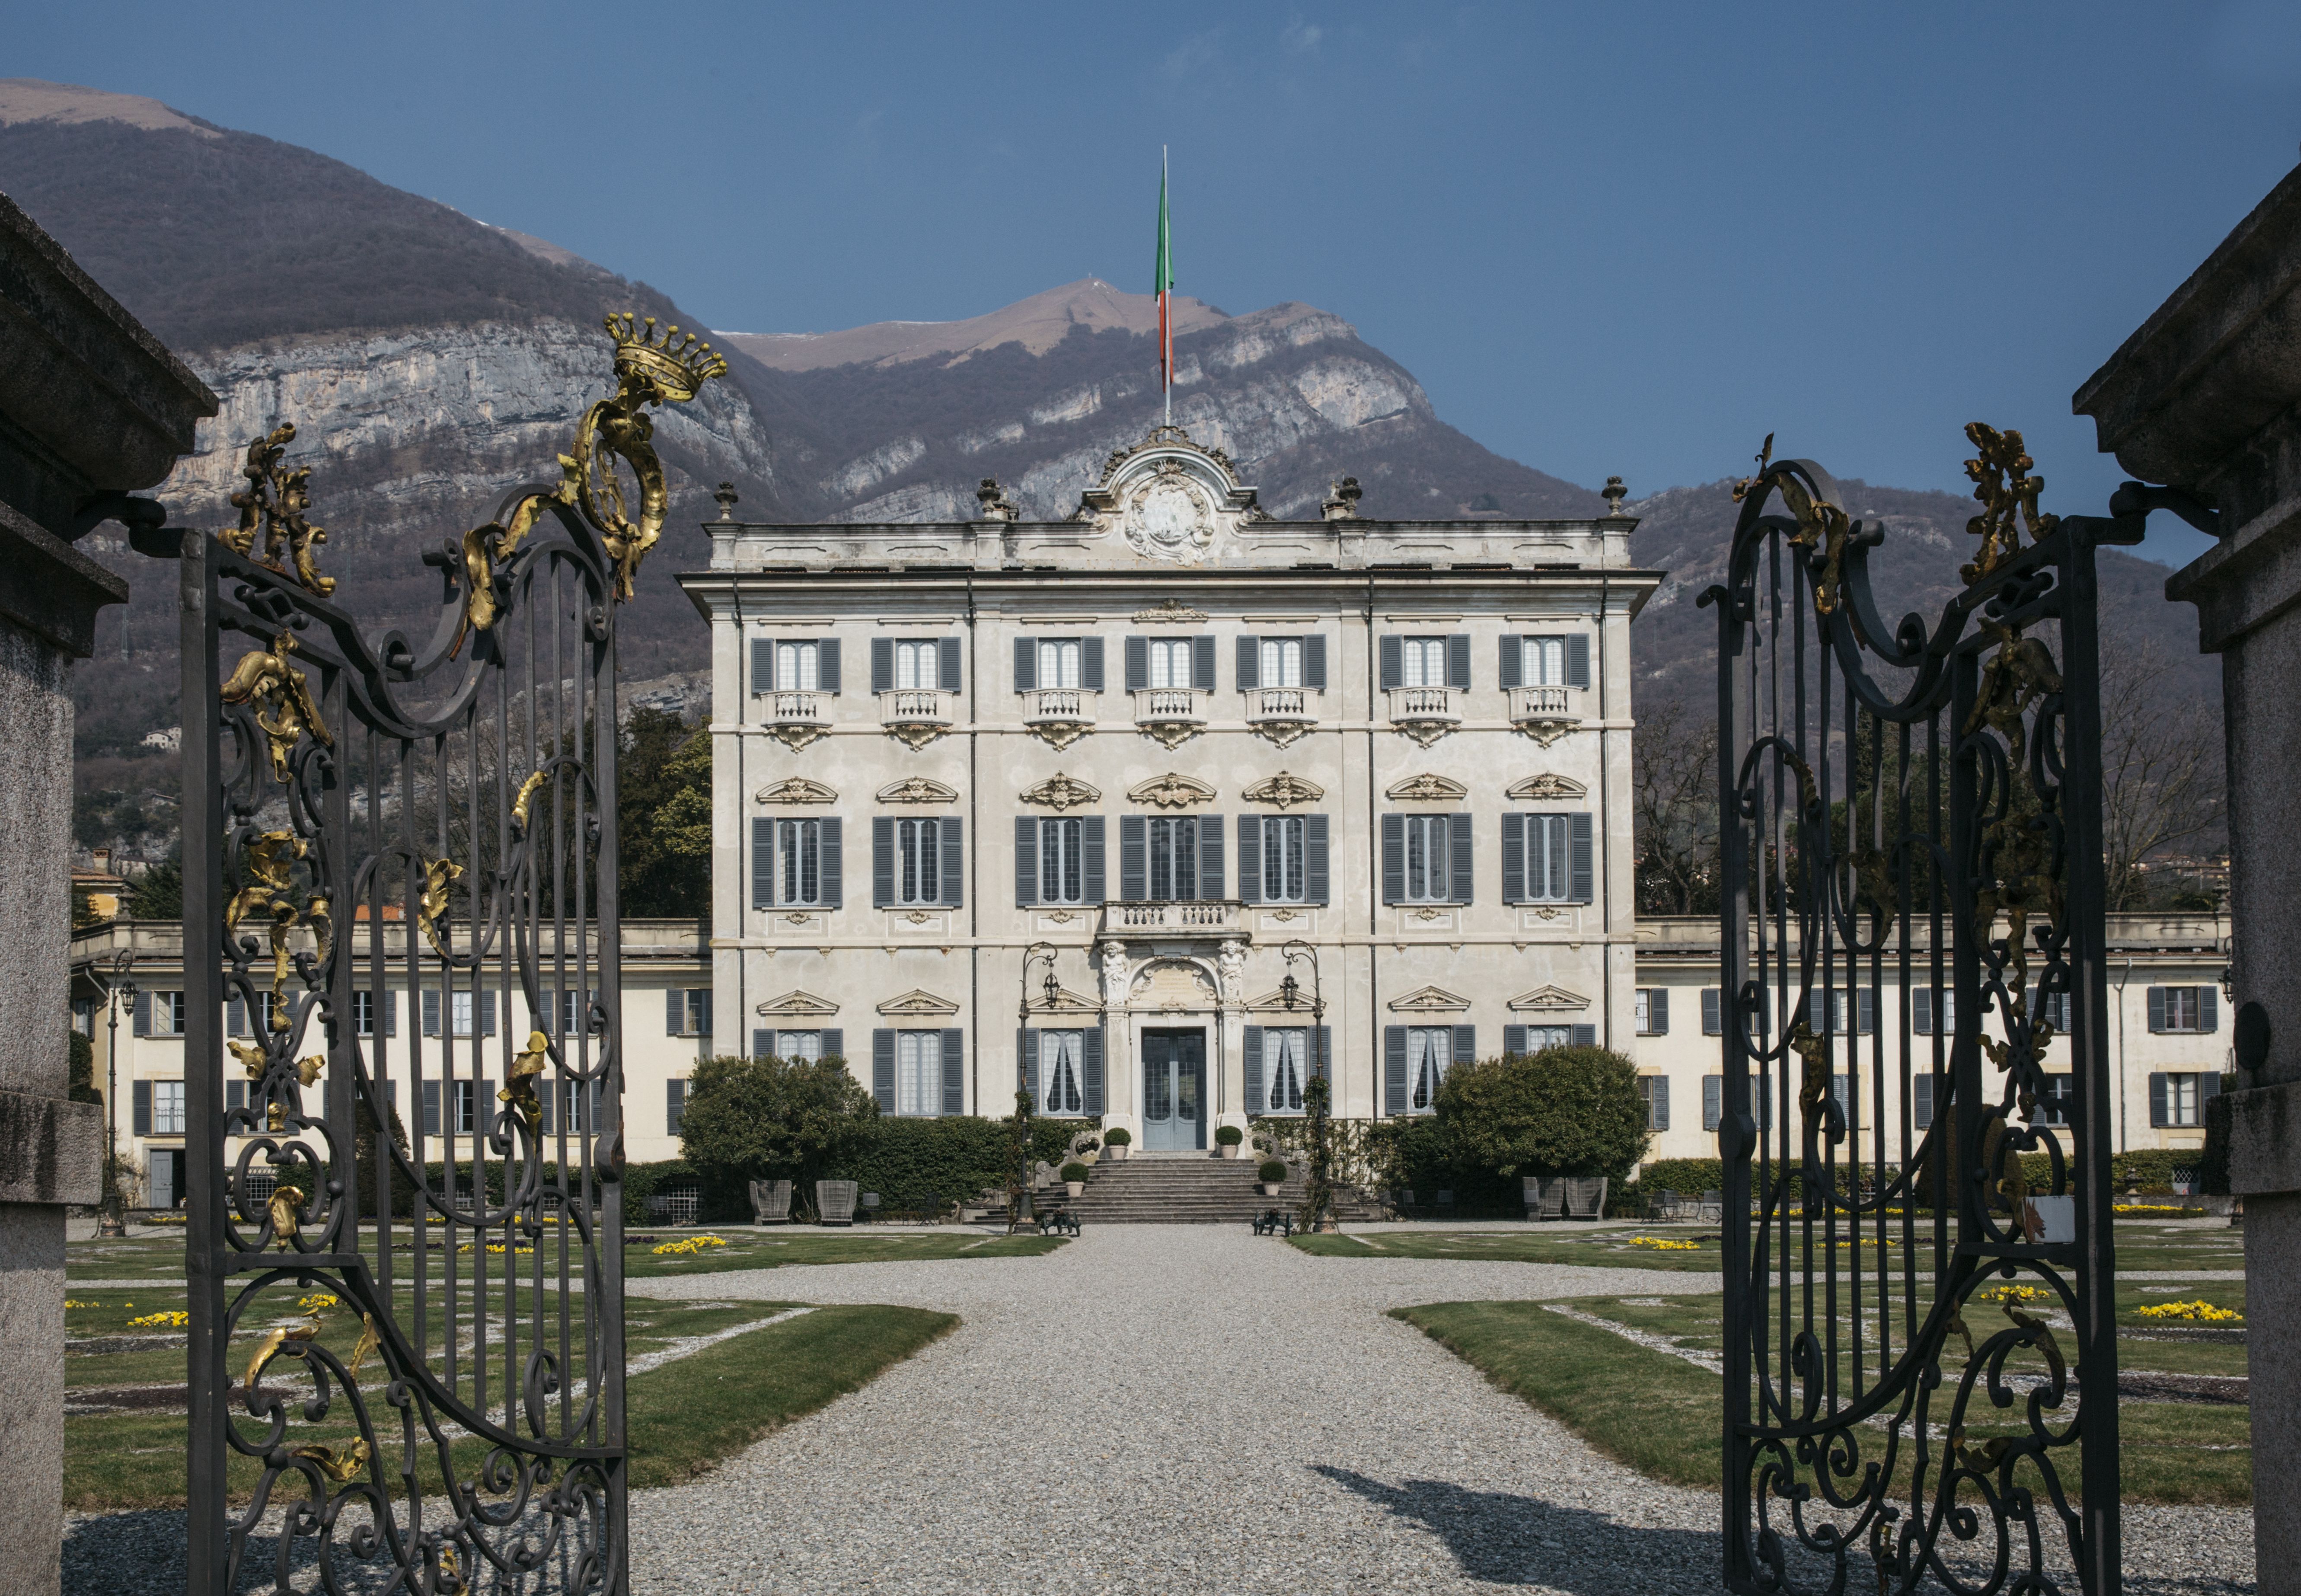 Villa Sola Cabiati: A Stroll Through History